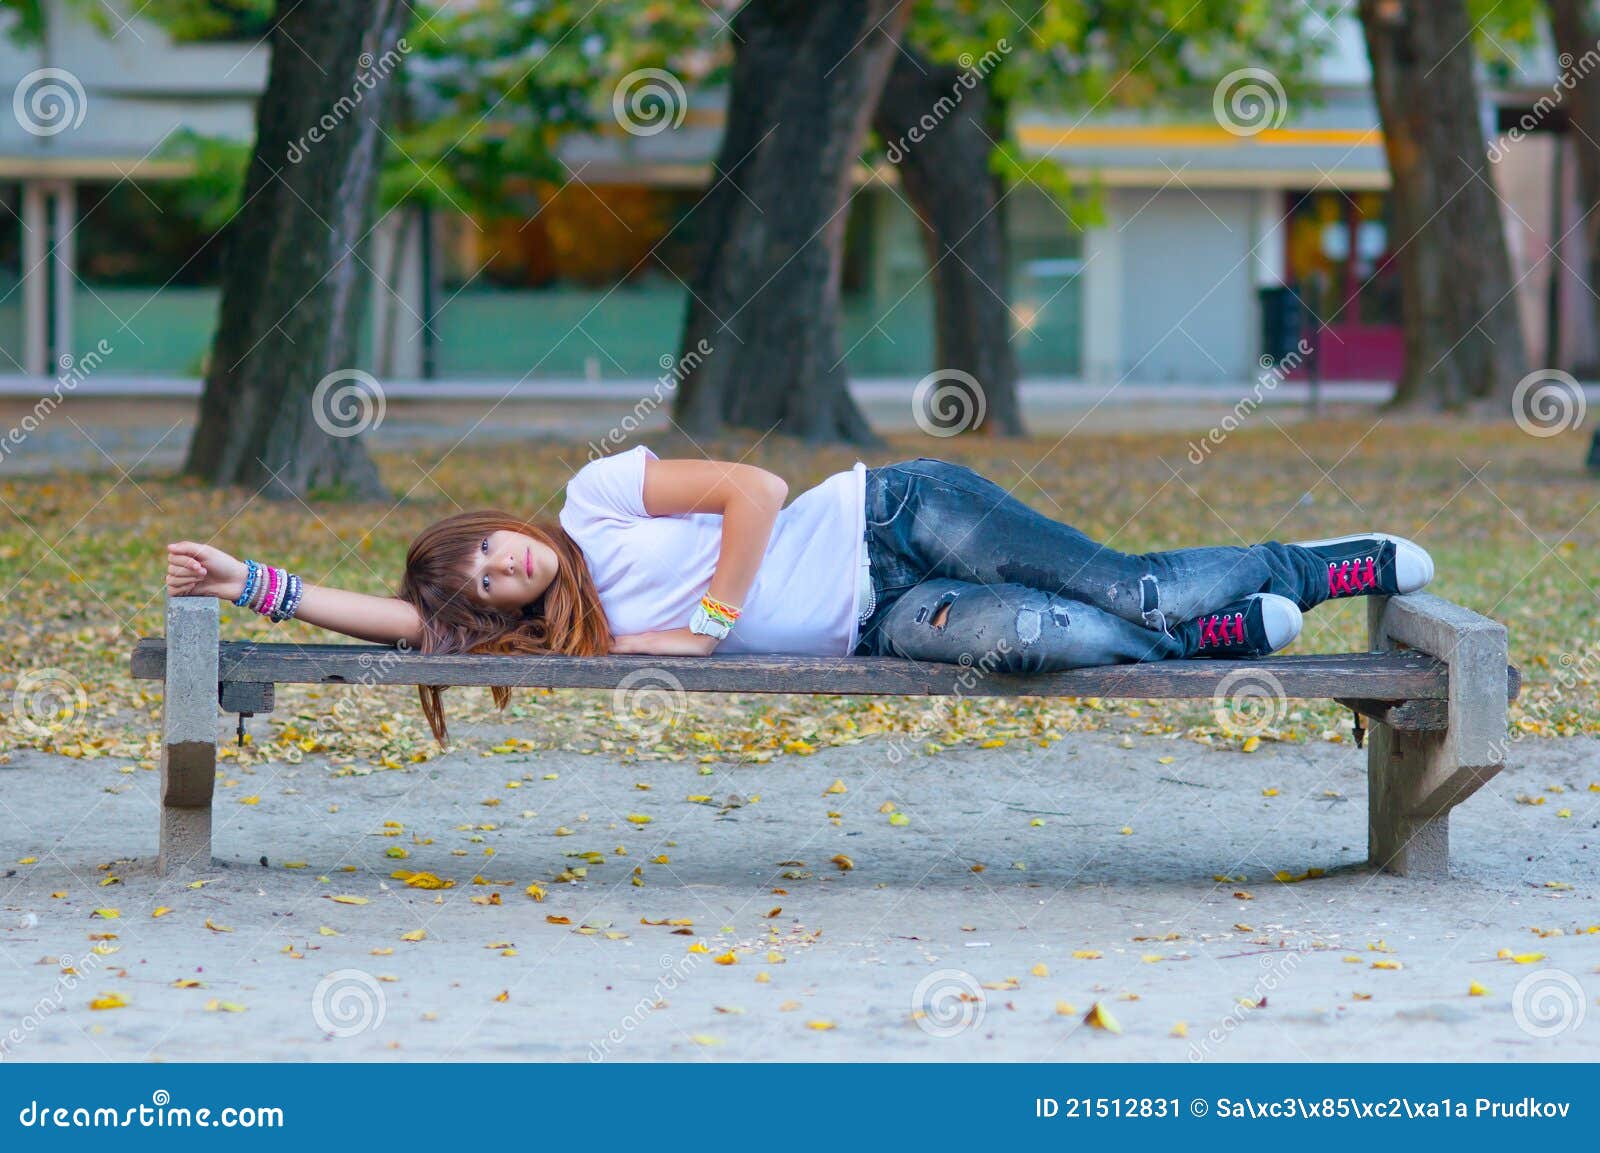 Пьяные позируют. Девушка валяется на улице. Девушка лежит на скамейке. Пьяные женщины на скамейке.